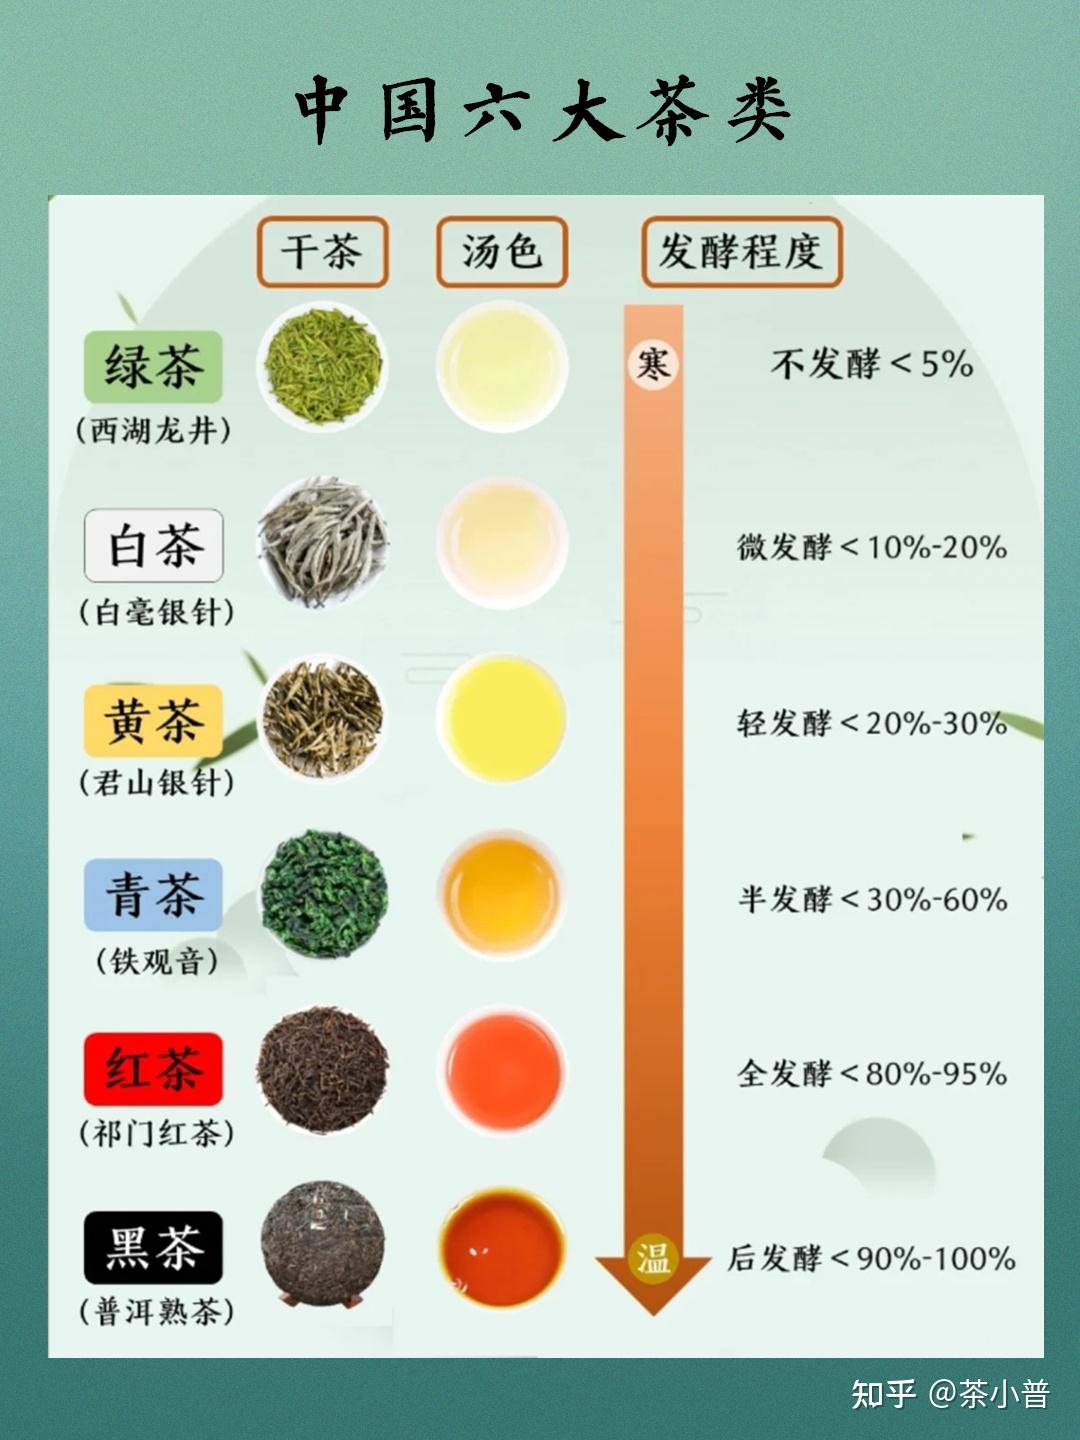 茶树鲜叶采摘后根据制作工艺的不同,分为六大茶类(发酵程度由低到高)